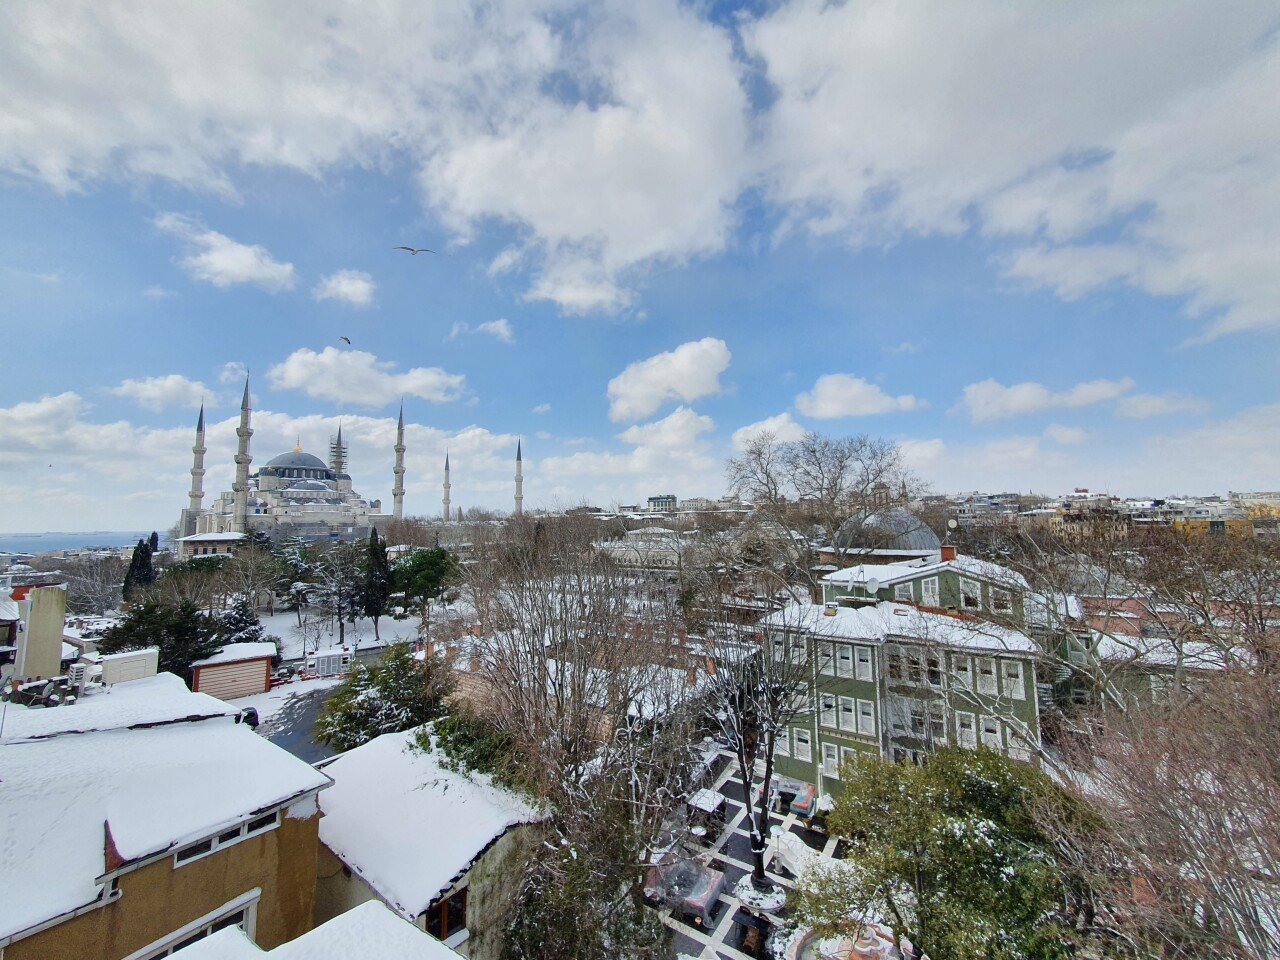 20220311_132411.jpg 터키 이스탄불 3월인데 눈 엄청 많이 왔네요 ㅎㅎ